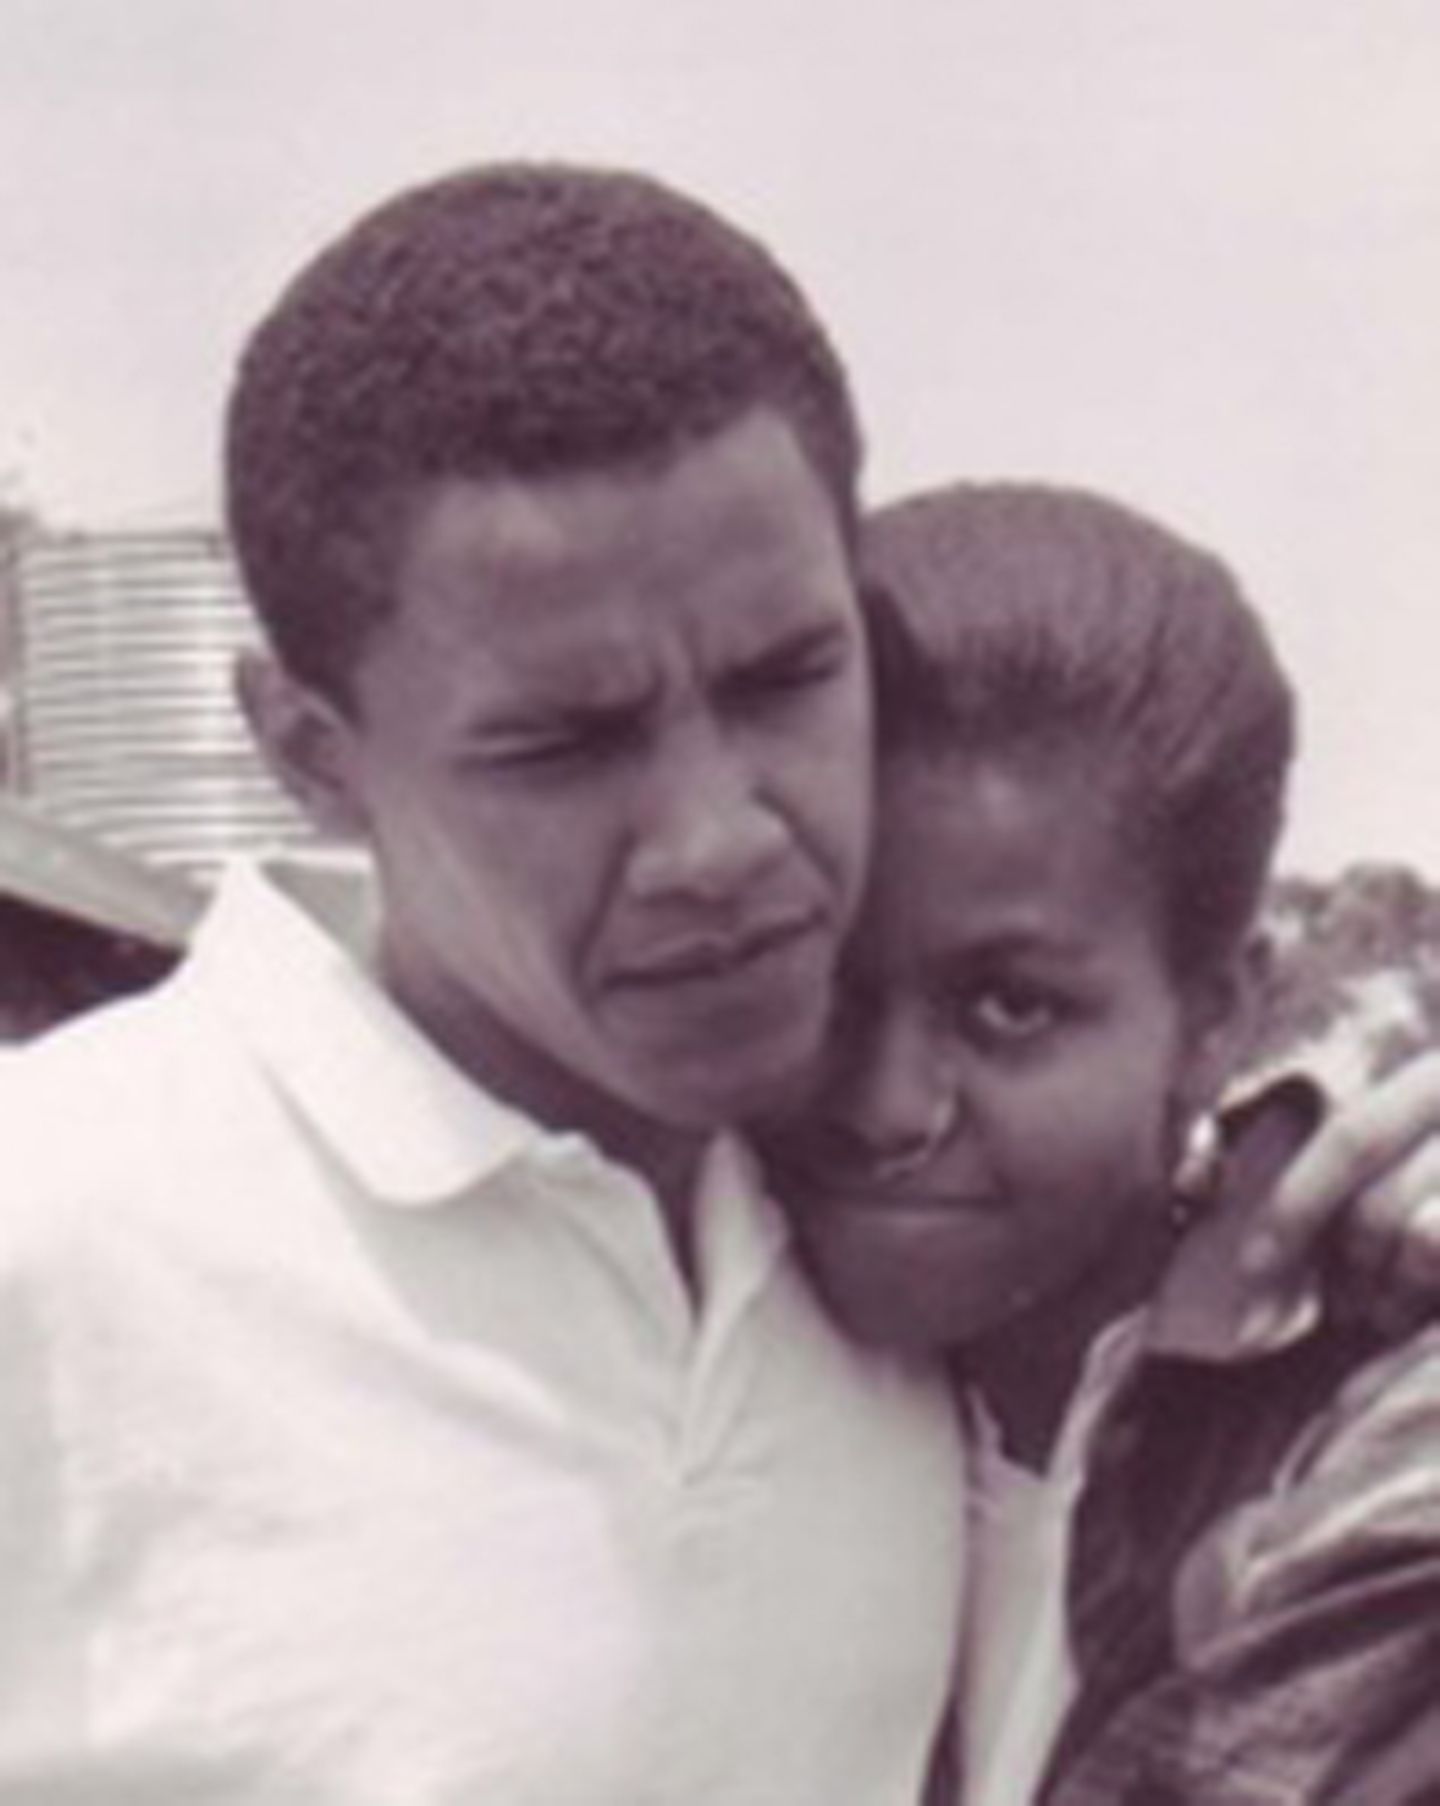 Barack und Michelle Obama